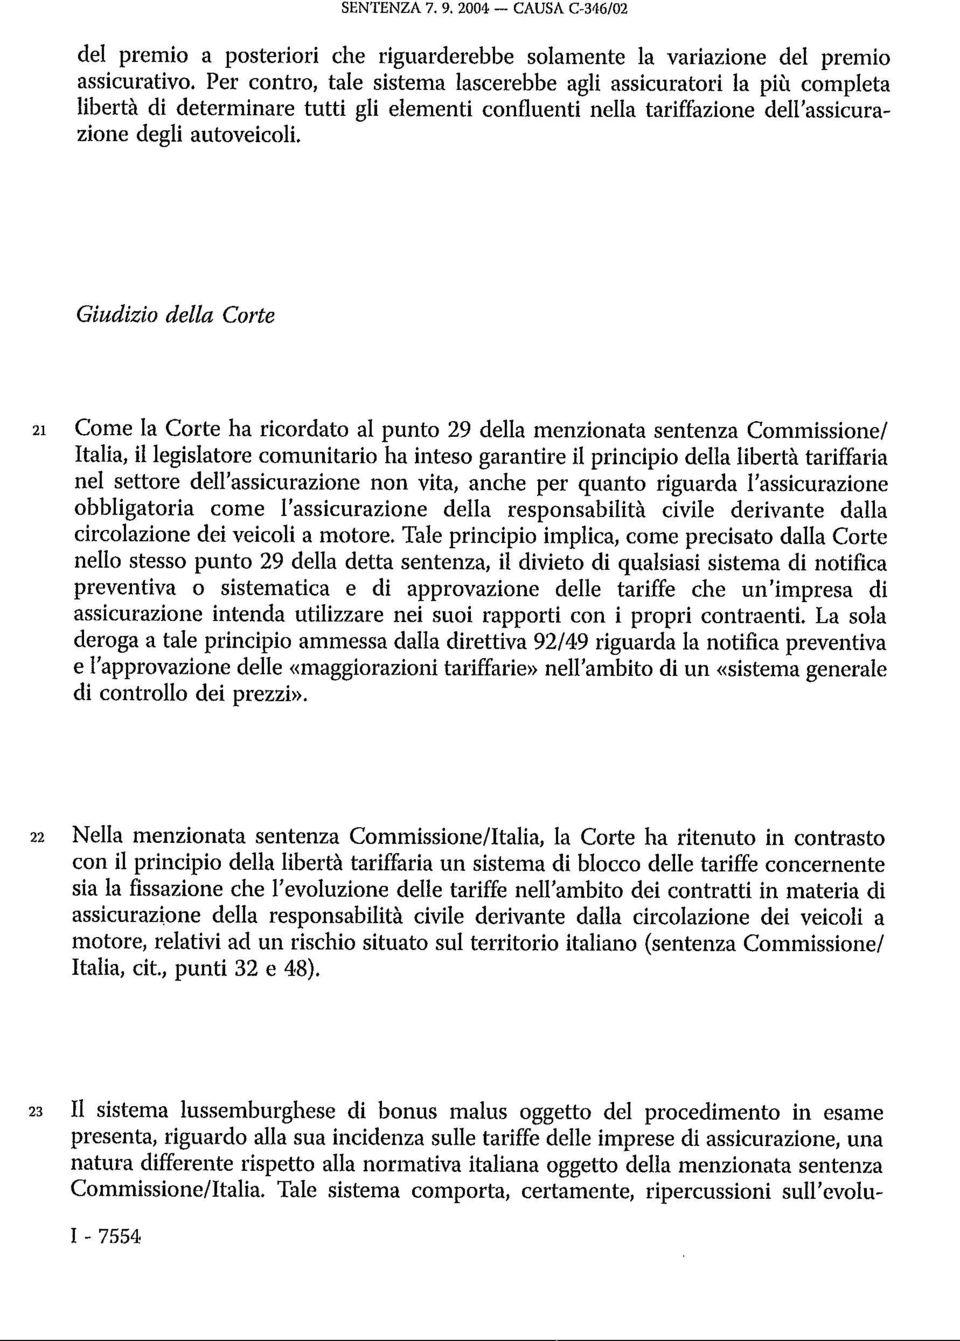 Giudizio della Corte 21 Come la Corte ha ricordato al punto 29 della menzionata sentenza Commissione/ Italia, il legislatore comunitario ha inteso garantire il principio della libertà tariffaria nel